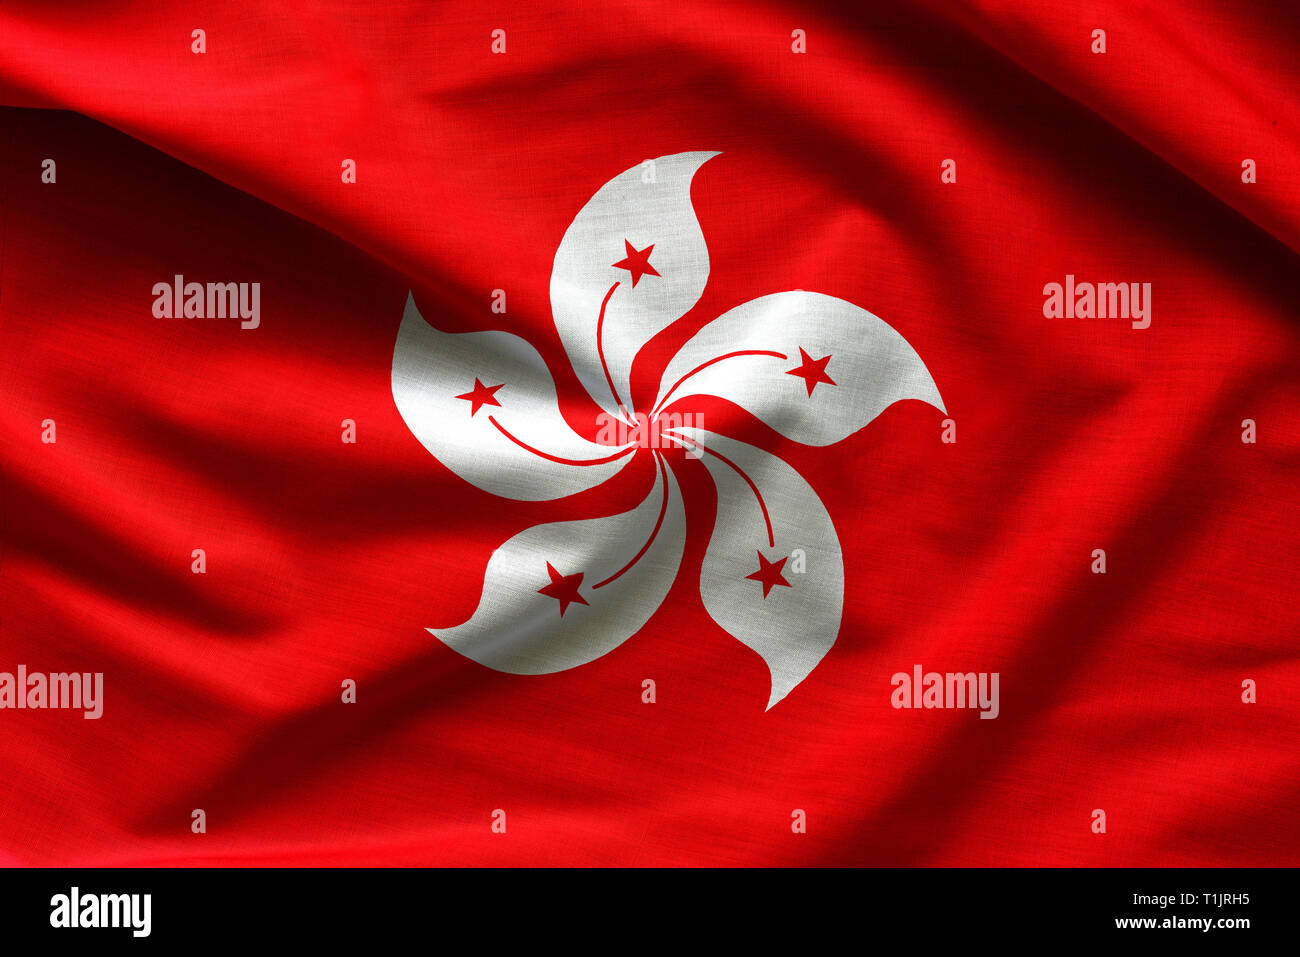 Realistic flag of Hong Kong Stock Photo